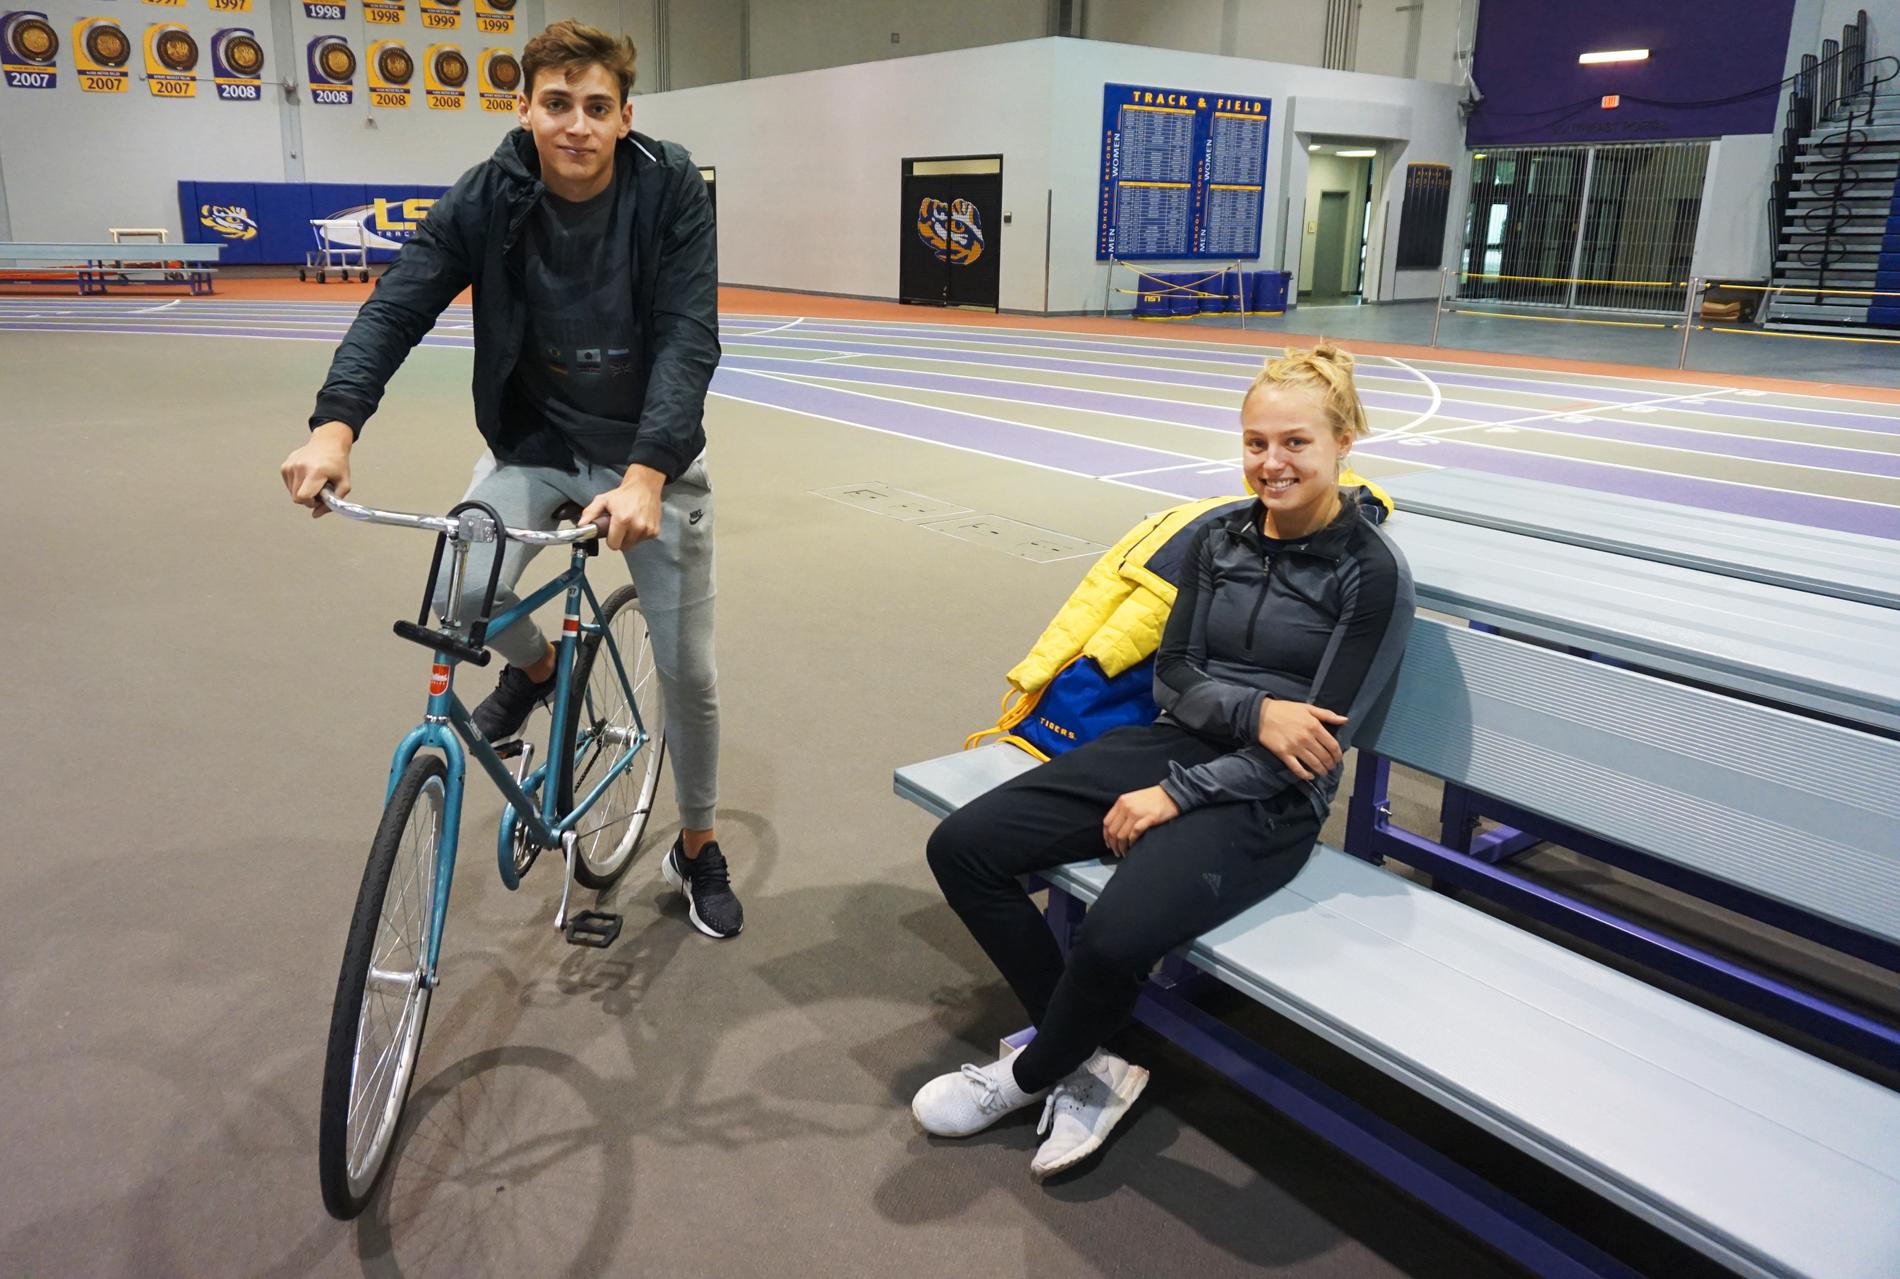 Stavhopparna Armand Duplantis, på sin stålblå cykel till vänster, och Lisa Gunnarsson tränar på Louisiana State University (LSU) i Baton Rouge, USA.